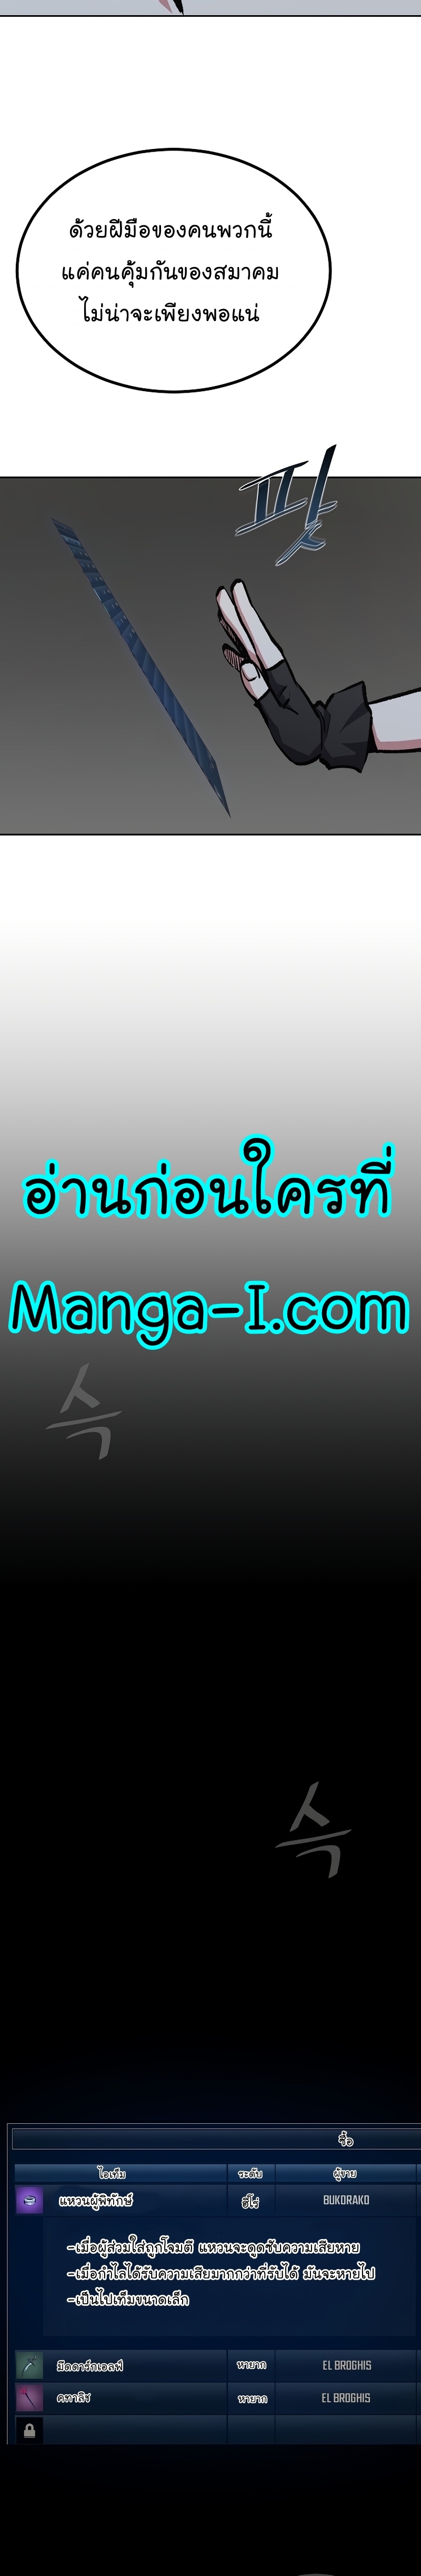 Manga Manhwa Level 1 Player 69 (4)